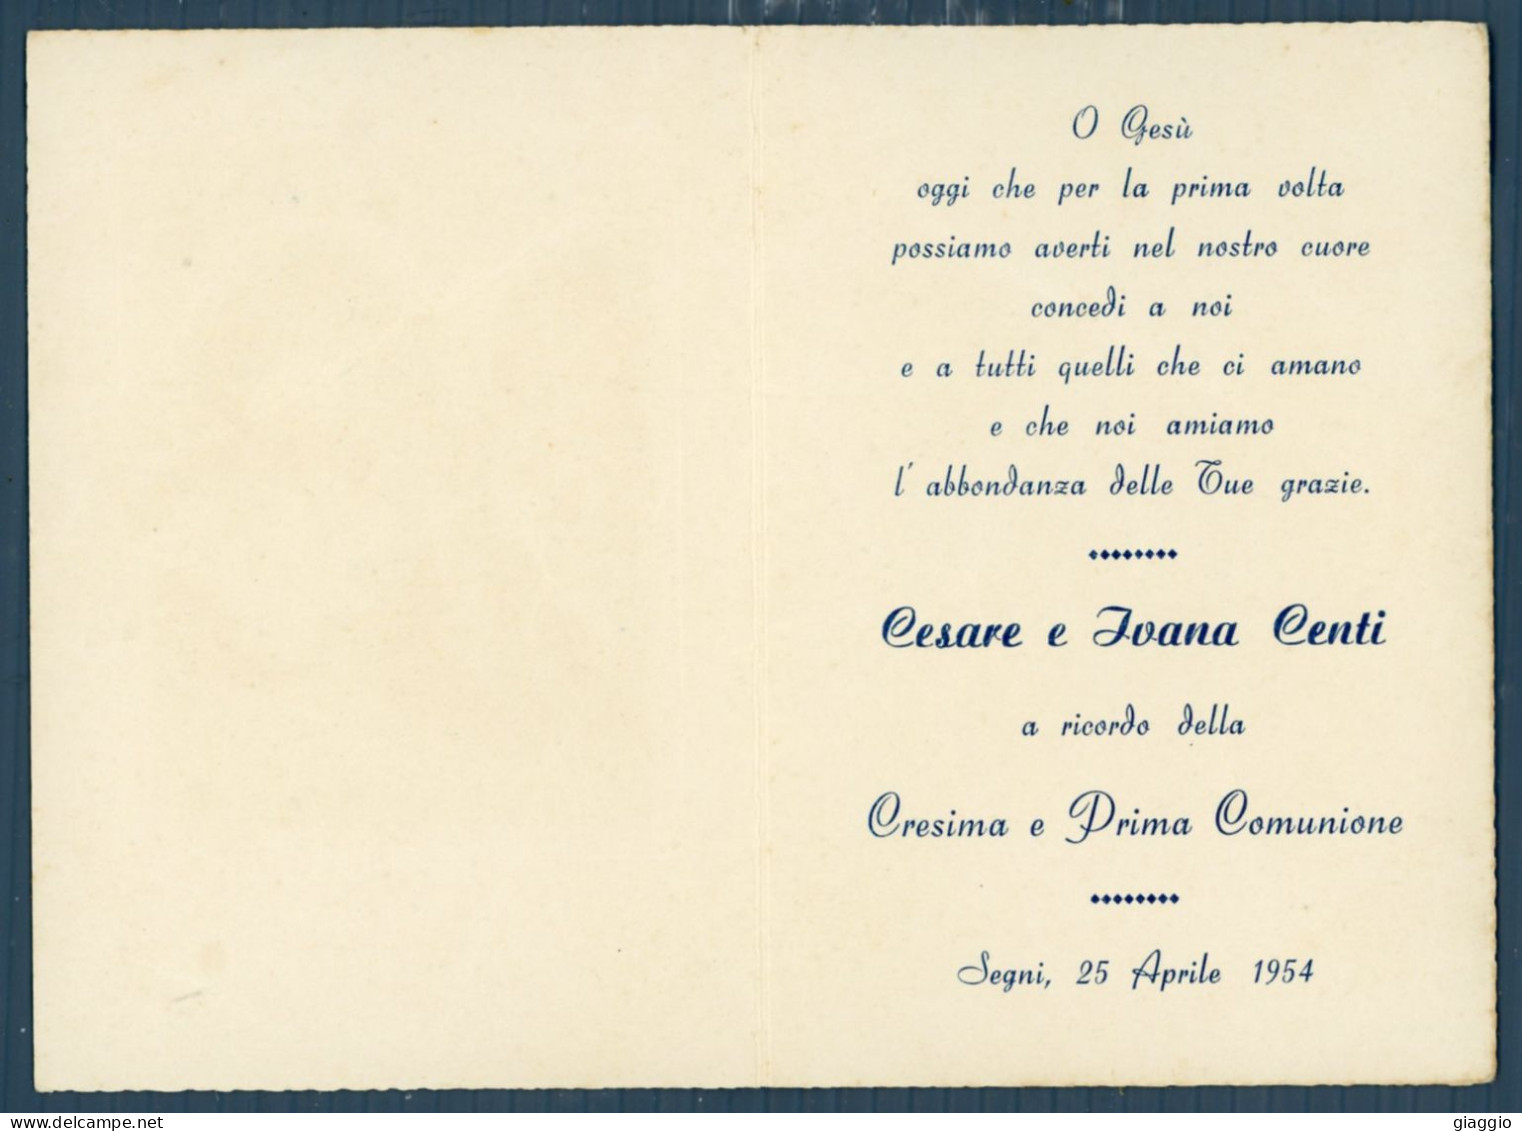 °°° Santino N. 8642 - Ricordo Della Cresima E Prima Comunione - Segni 1954 °°° - Religion & Esotérisme